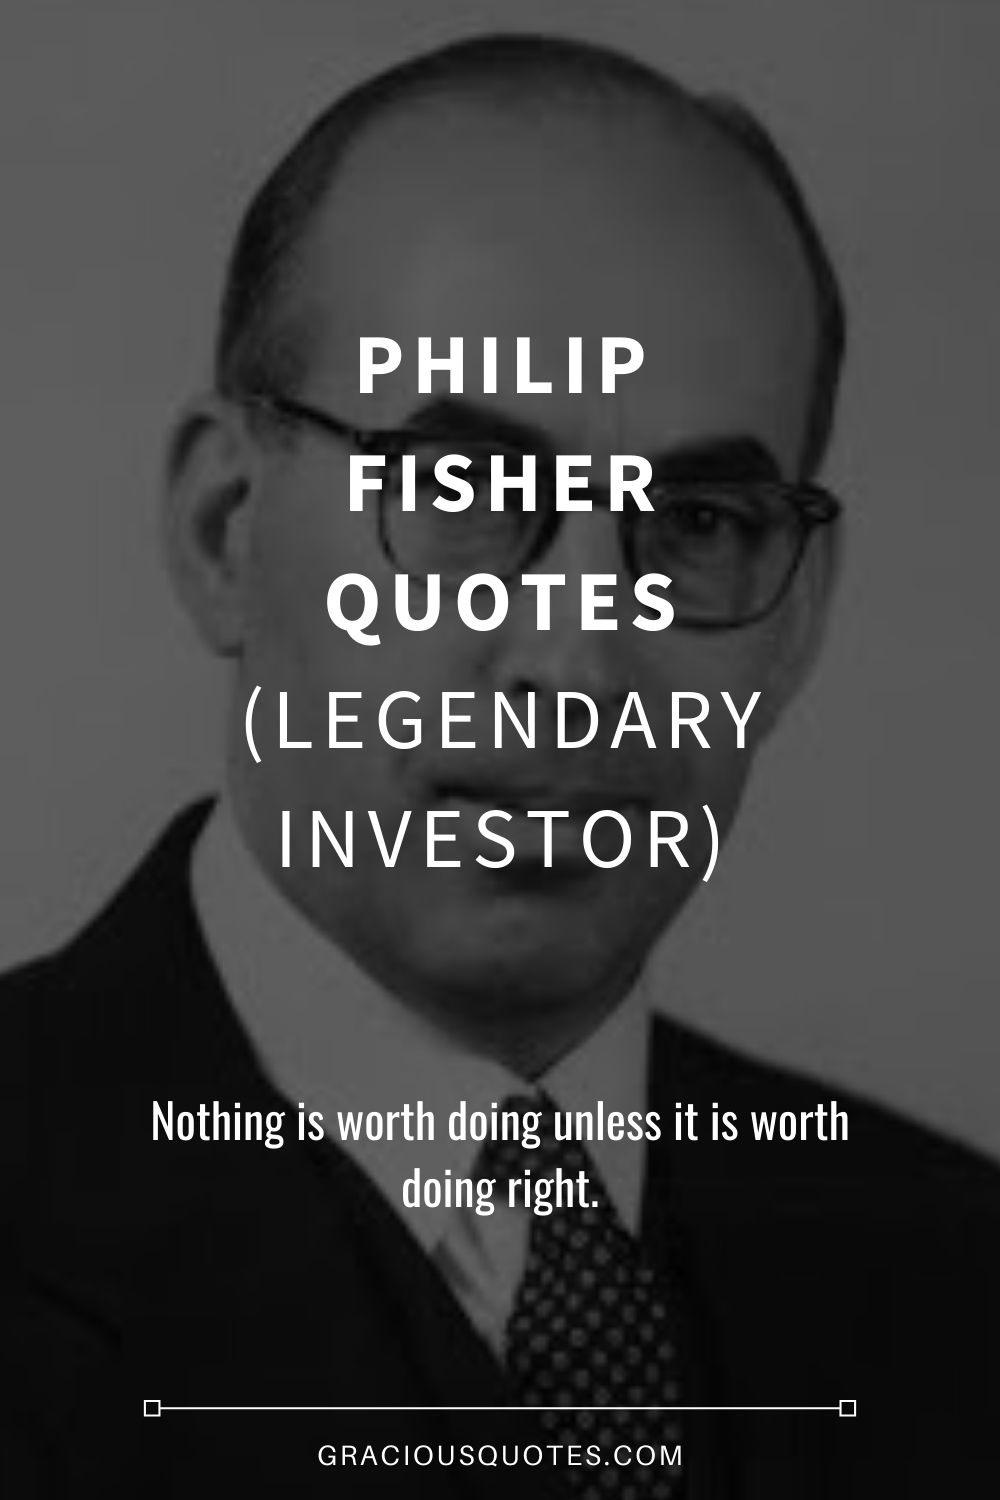 Philip Fisher Quotes (LEGENDARY INVESTOR) - Gracious Quotes